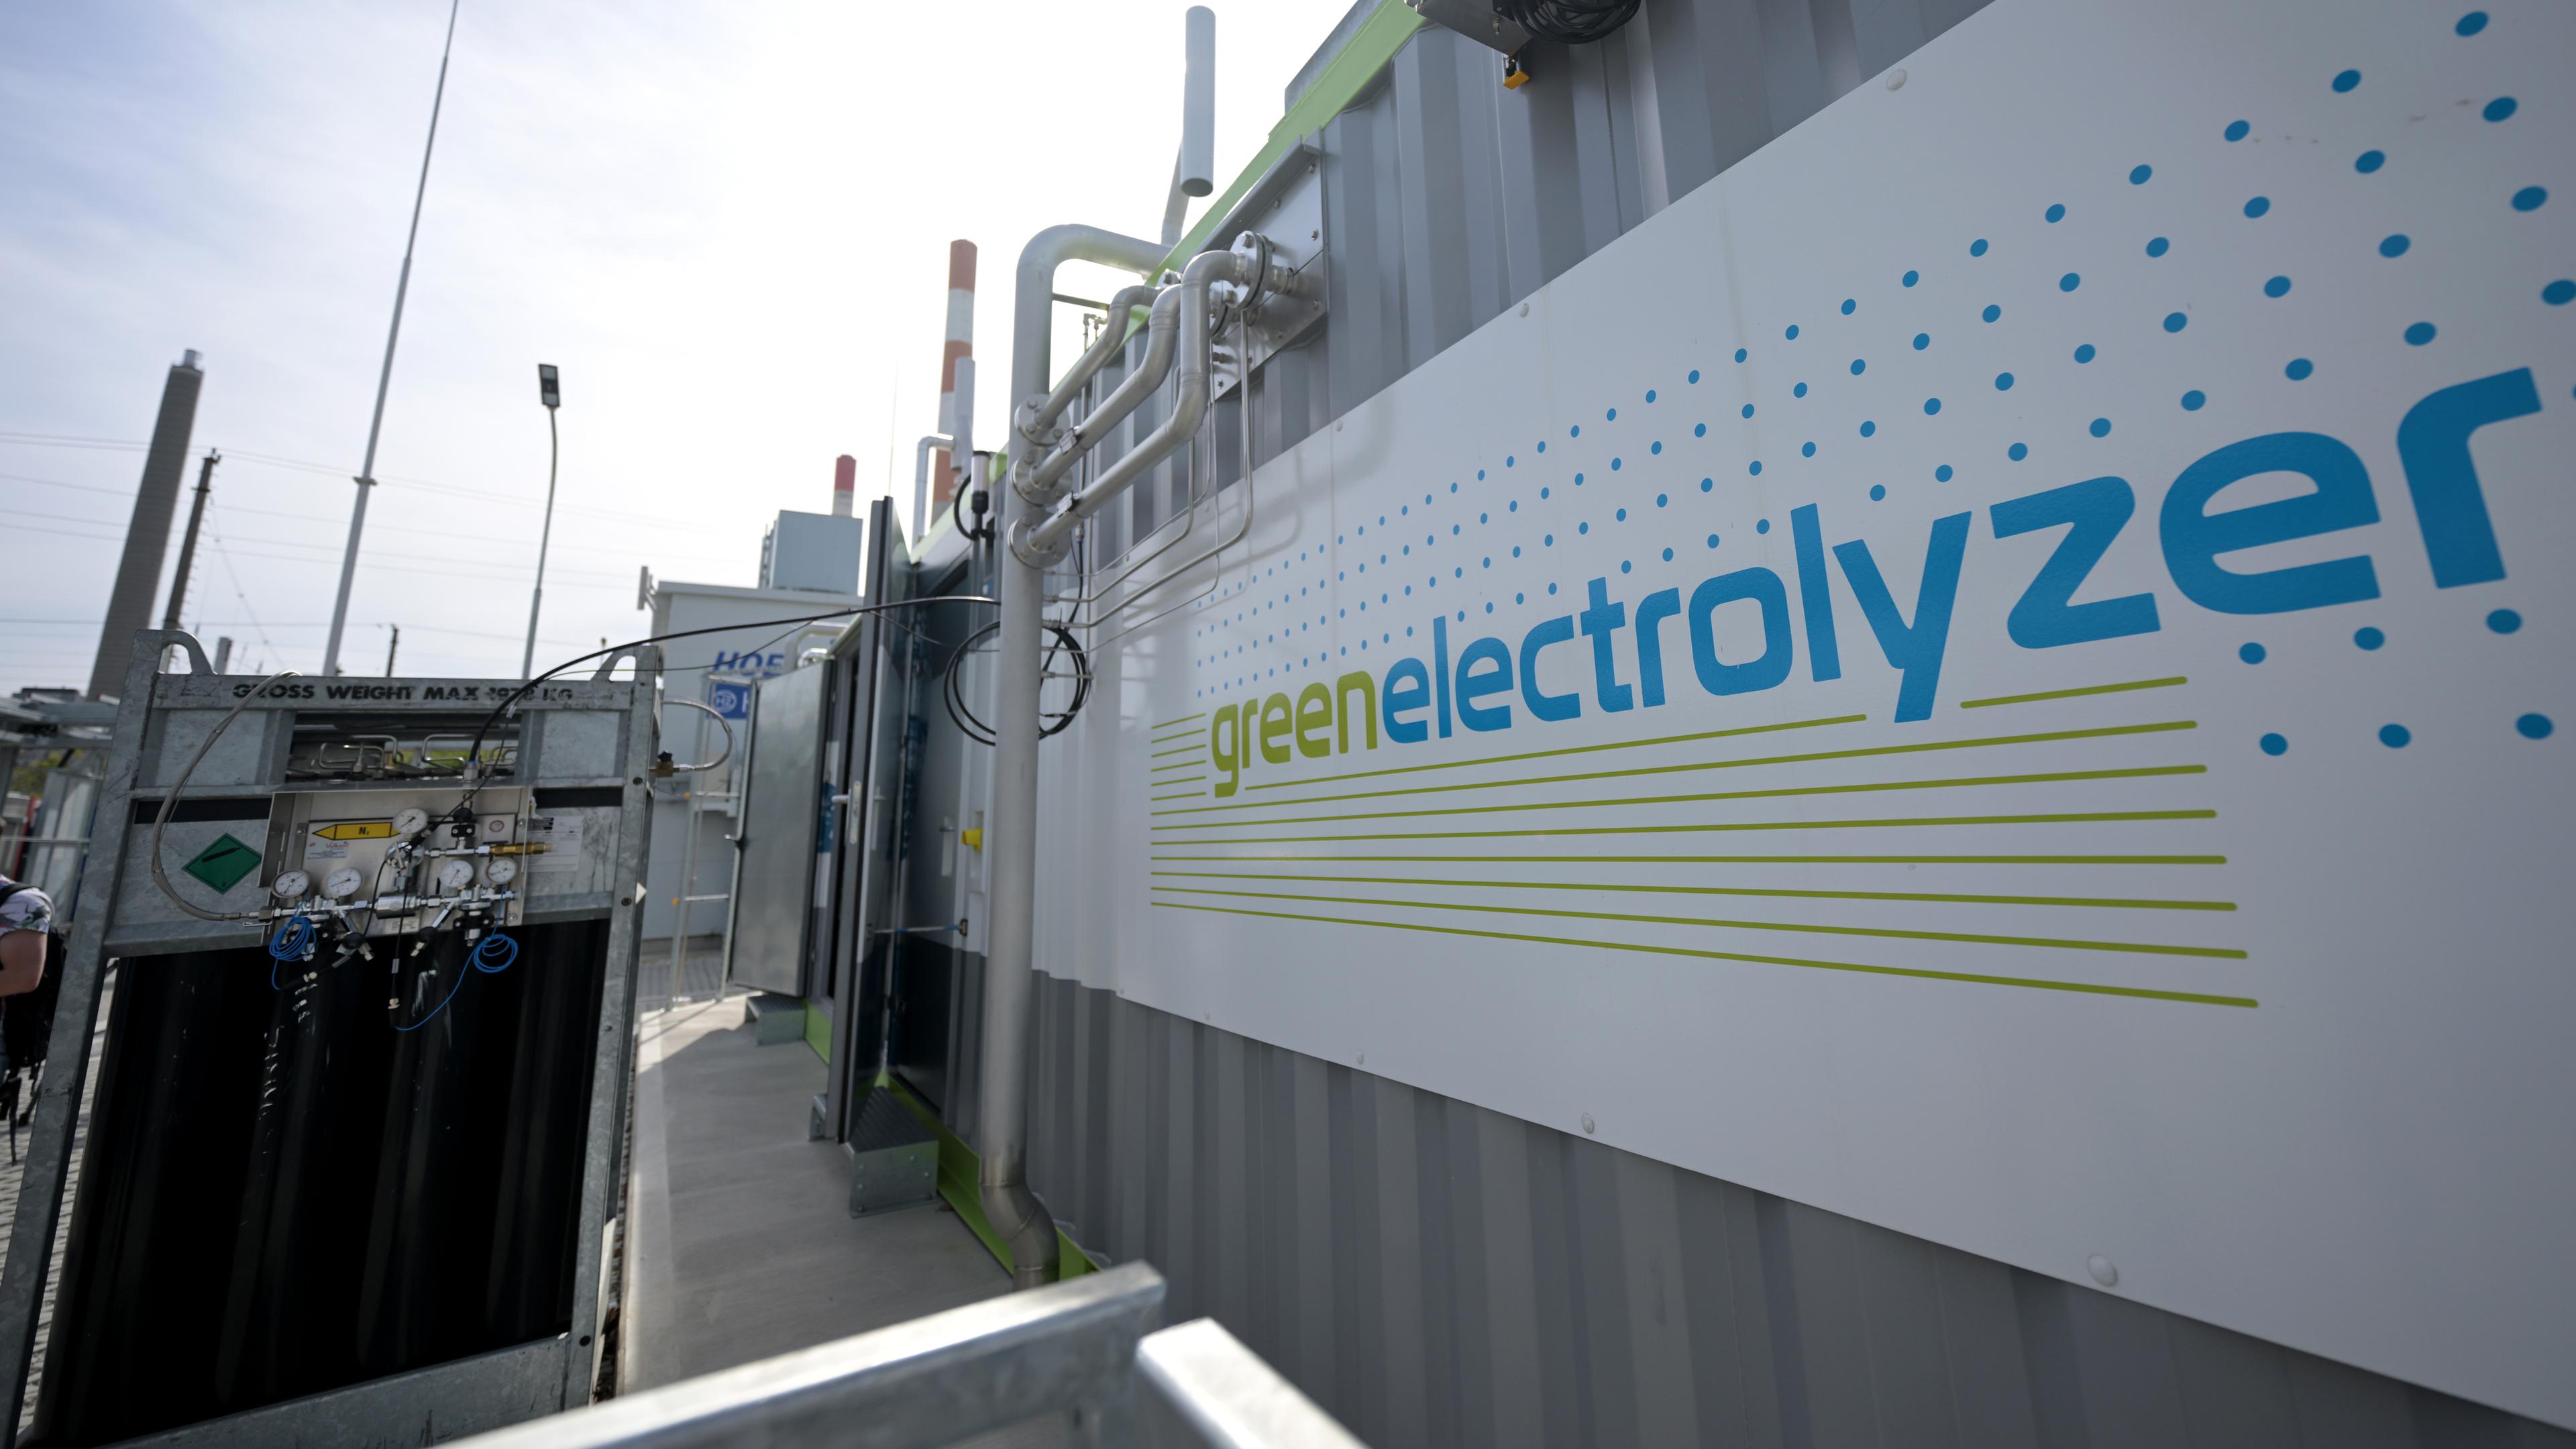 Erzeugungsanlage für Wasserstoff mit der Aufschrift "greenelectrolyzer"